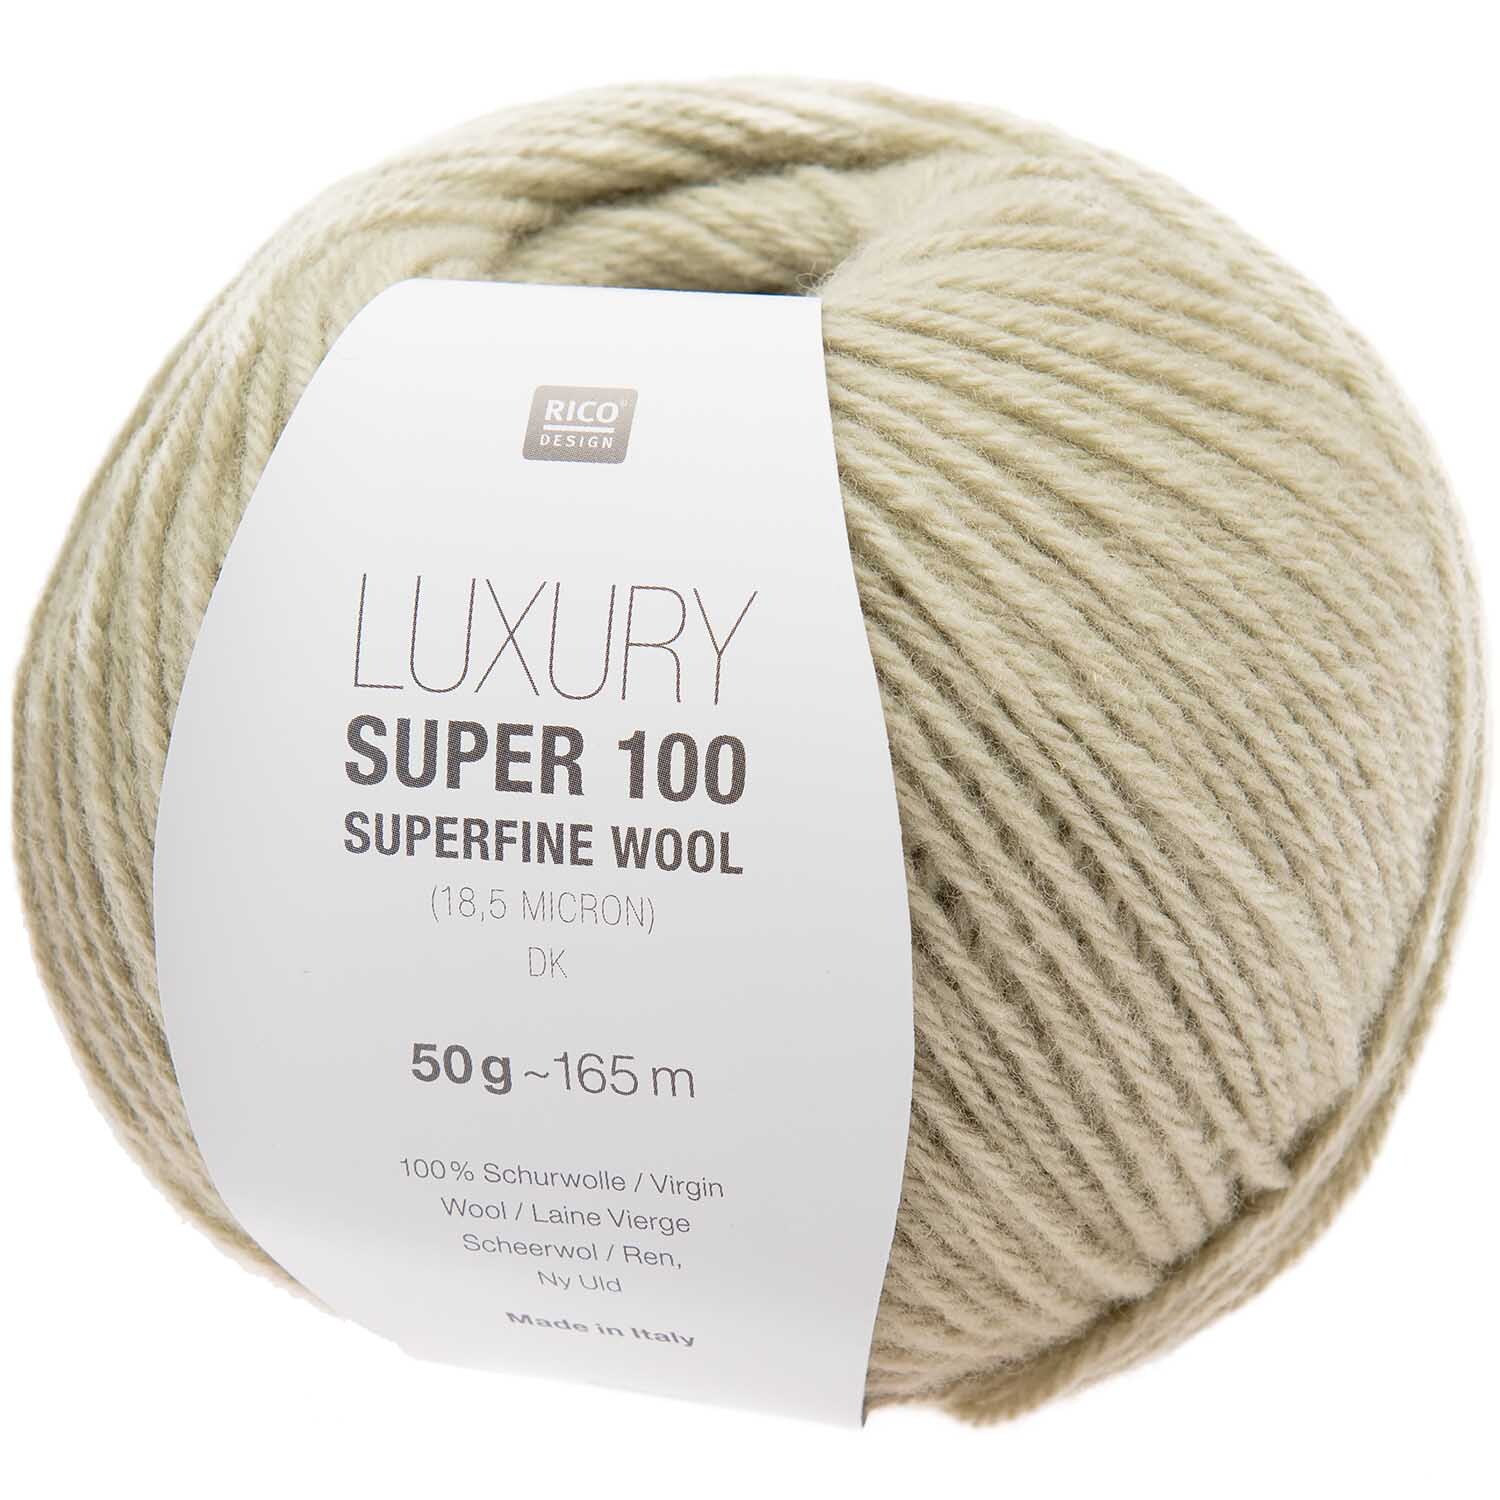 Luxury Super 100 Superfine Wool dk